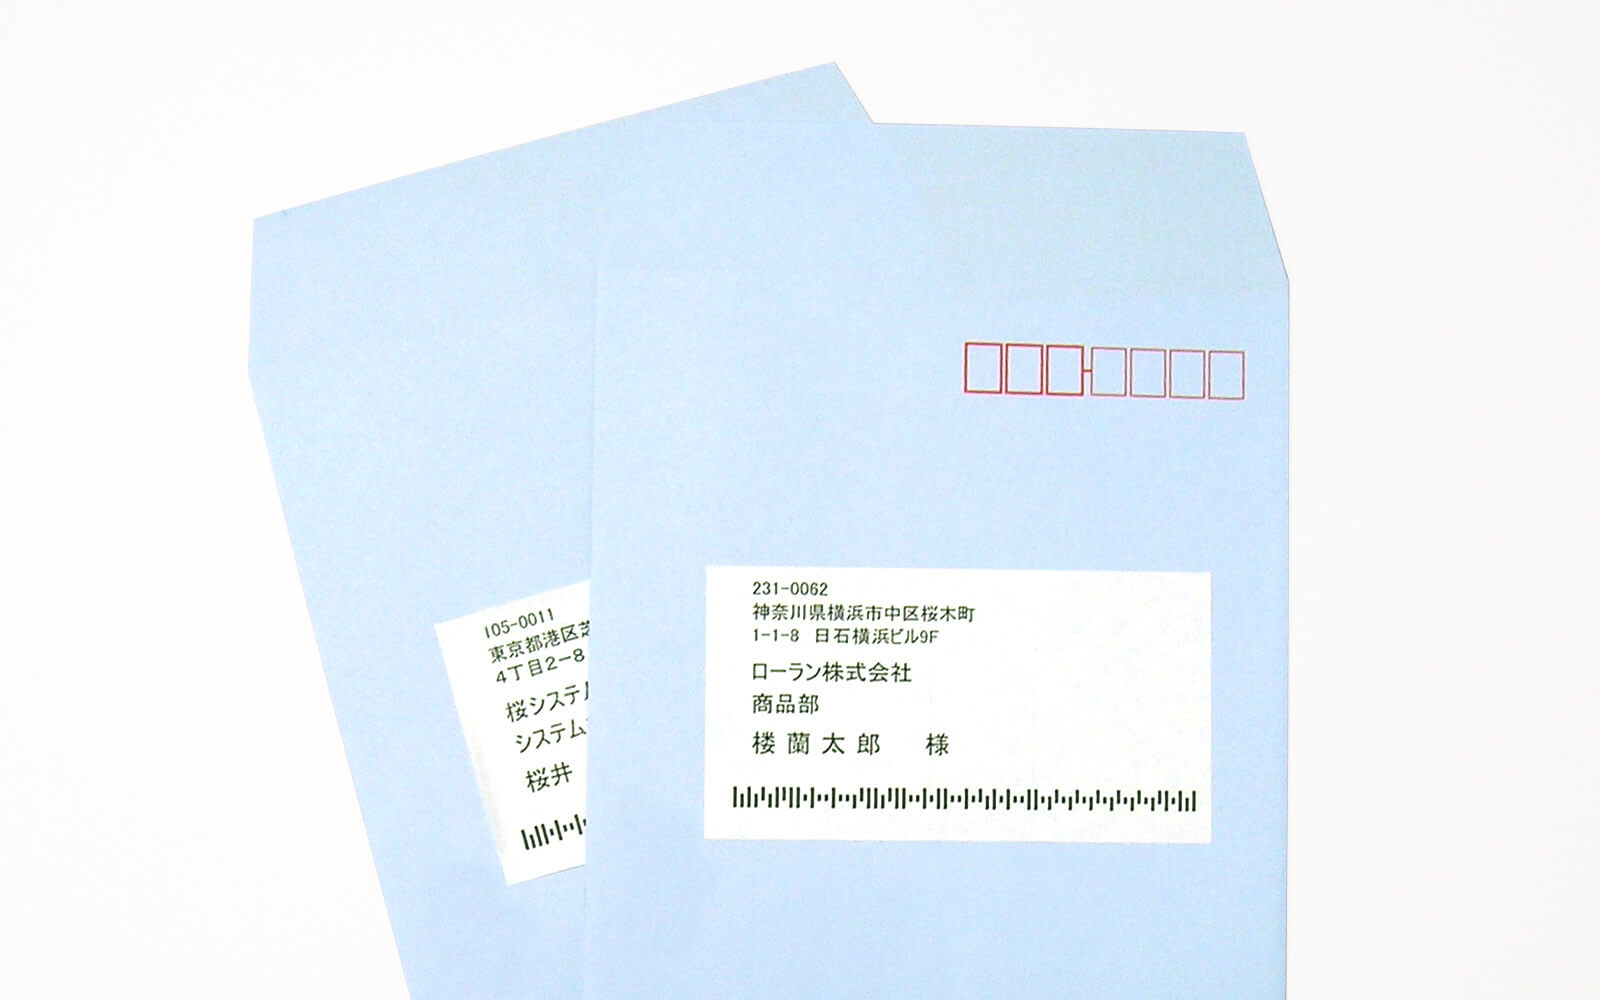 郵便カスタマバーコード付き宛名ラベルを印刷したイメージです。